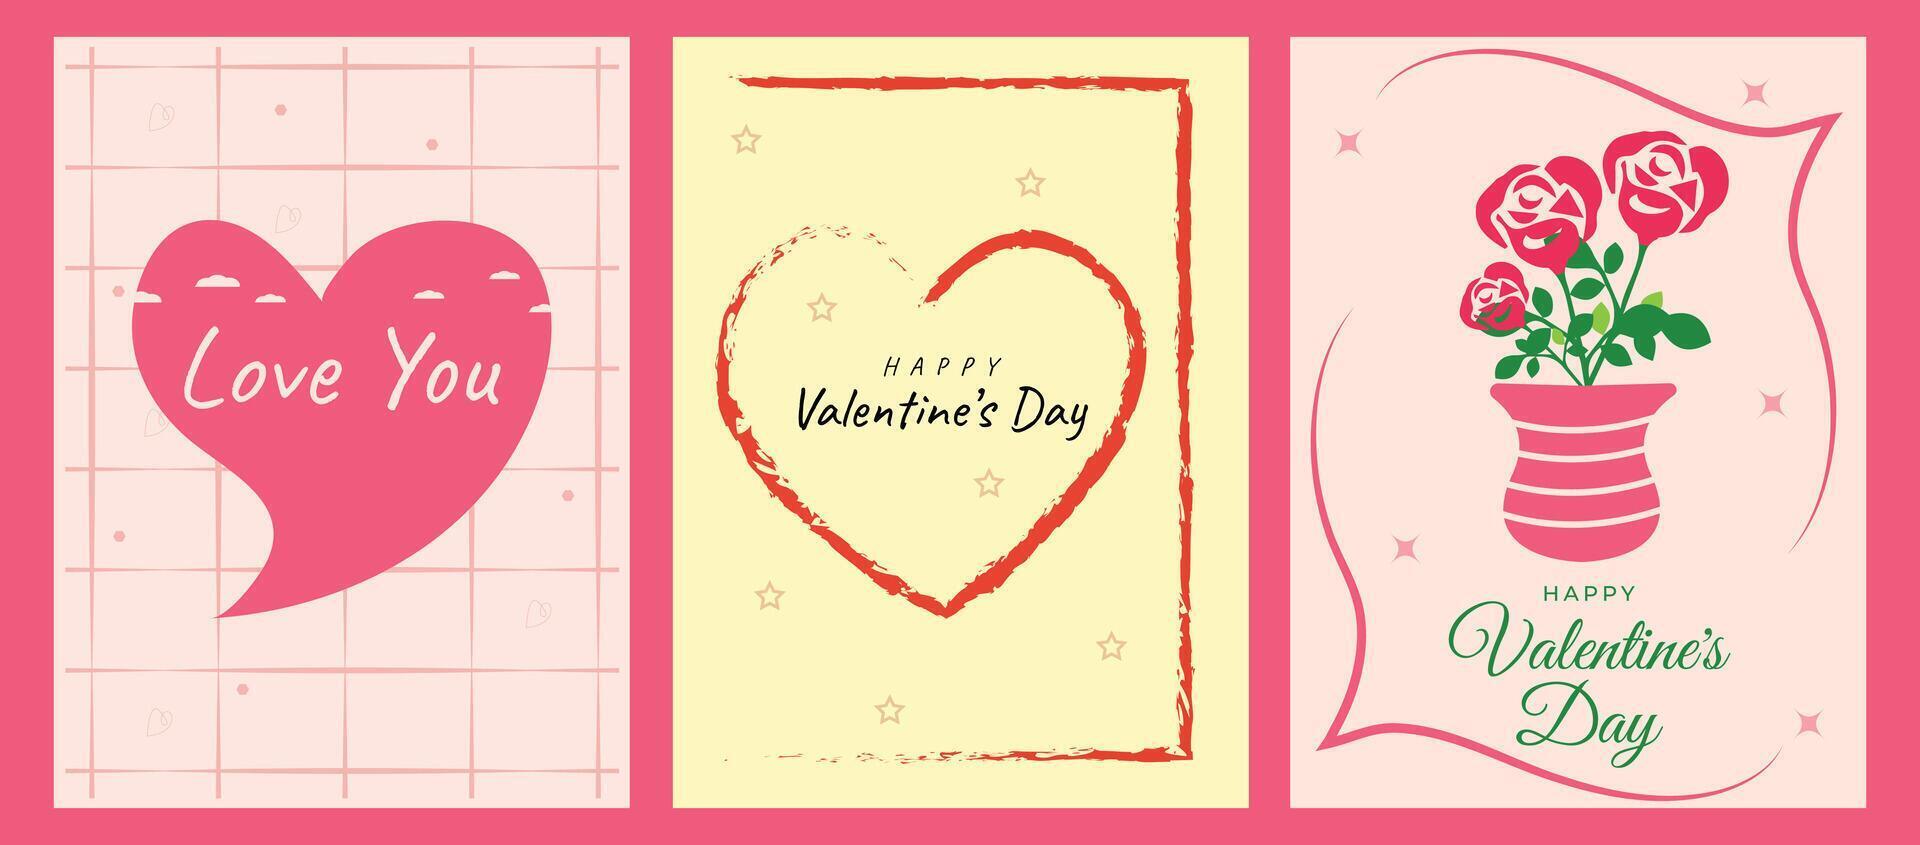 Happy women's day card design vector